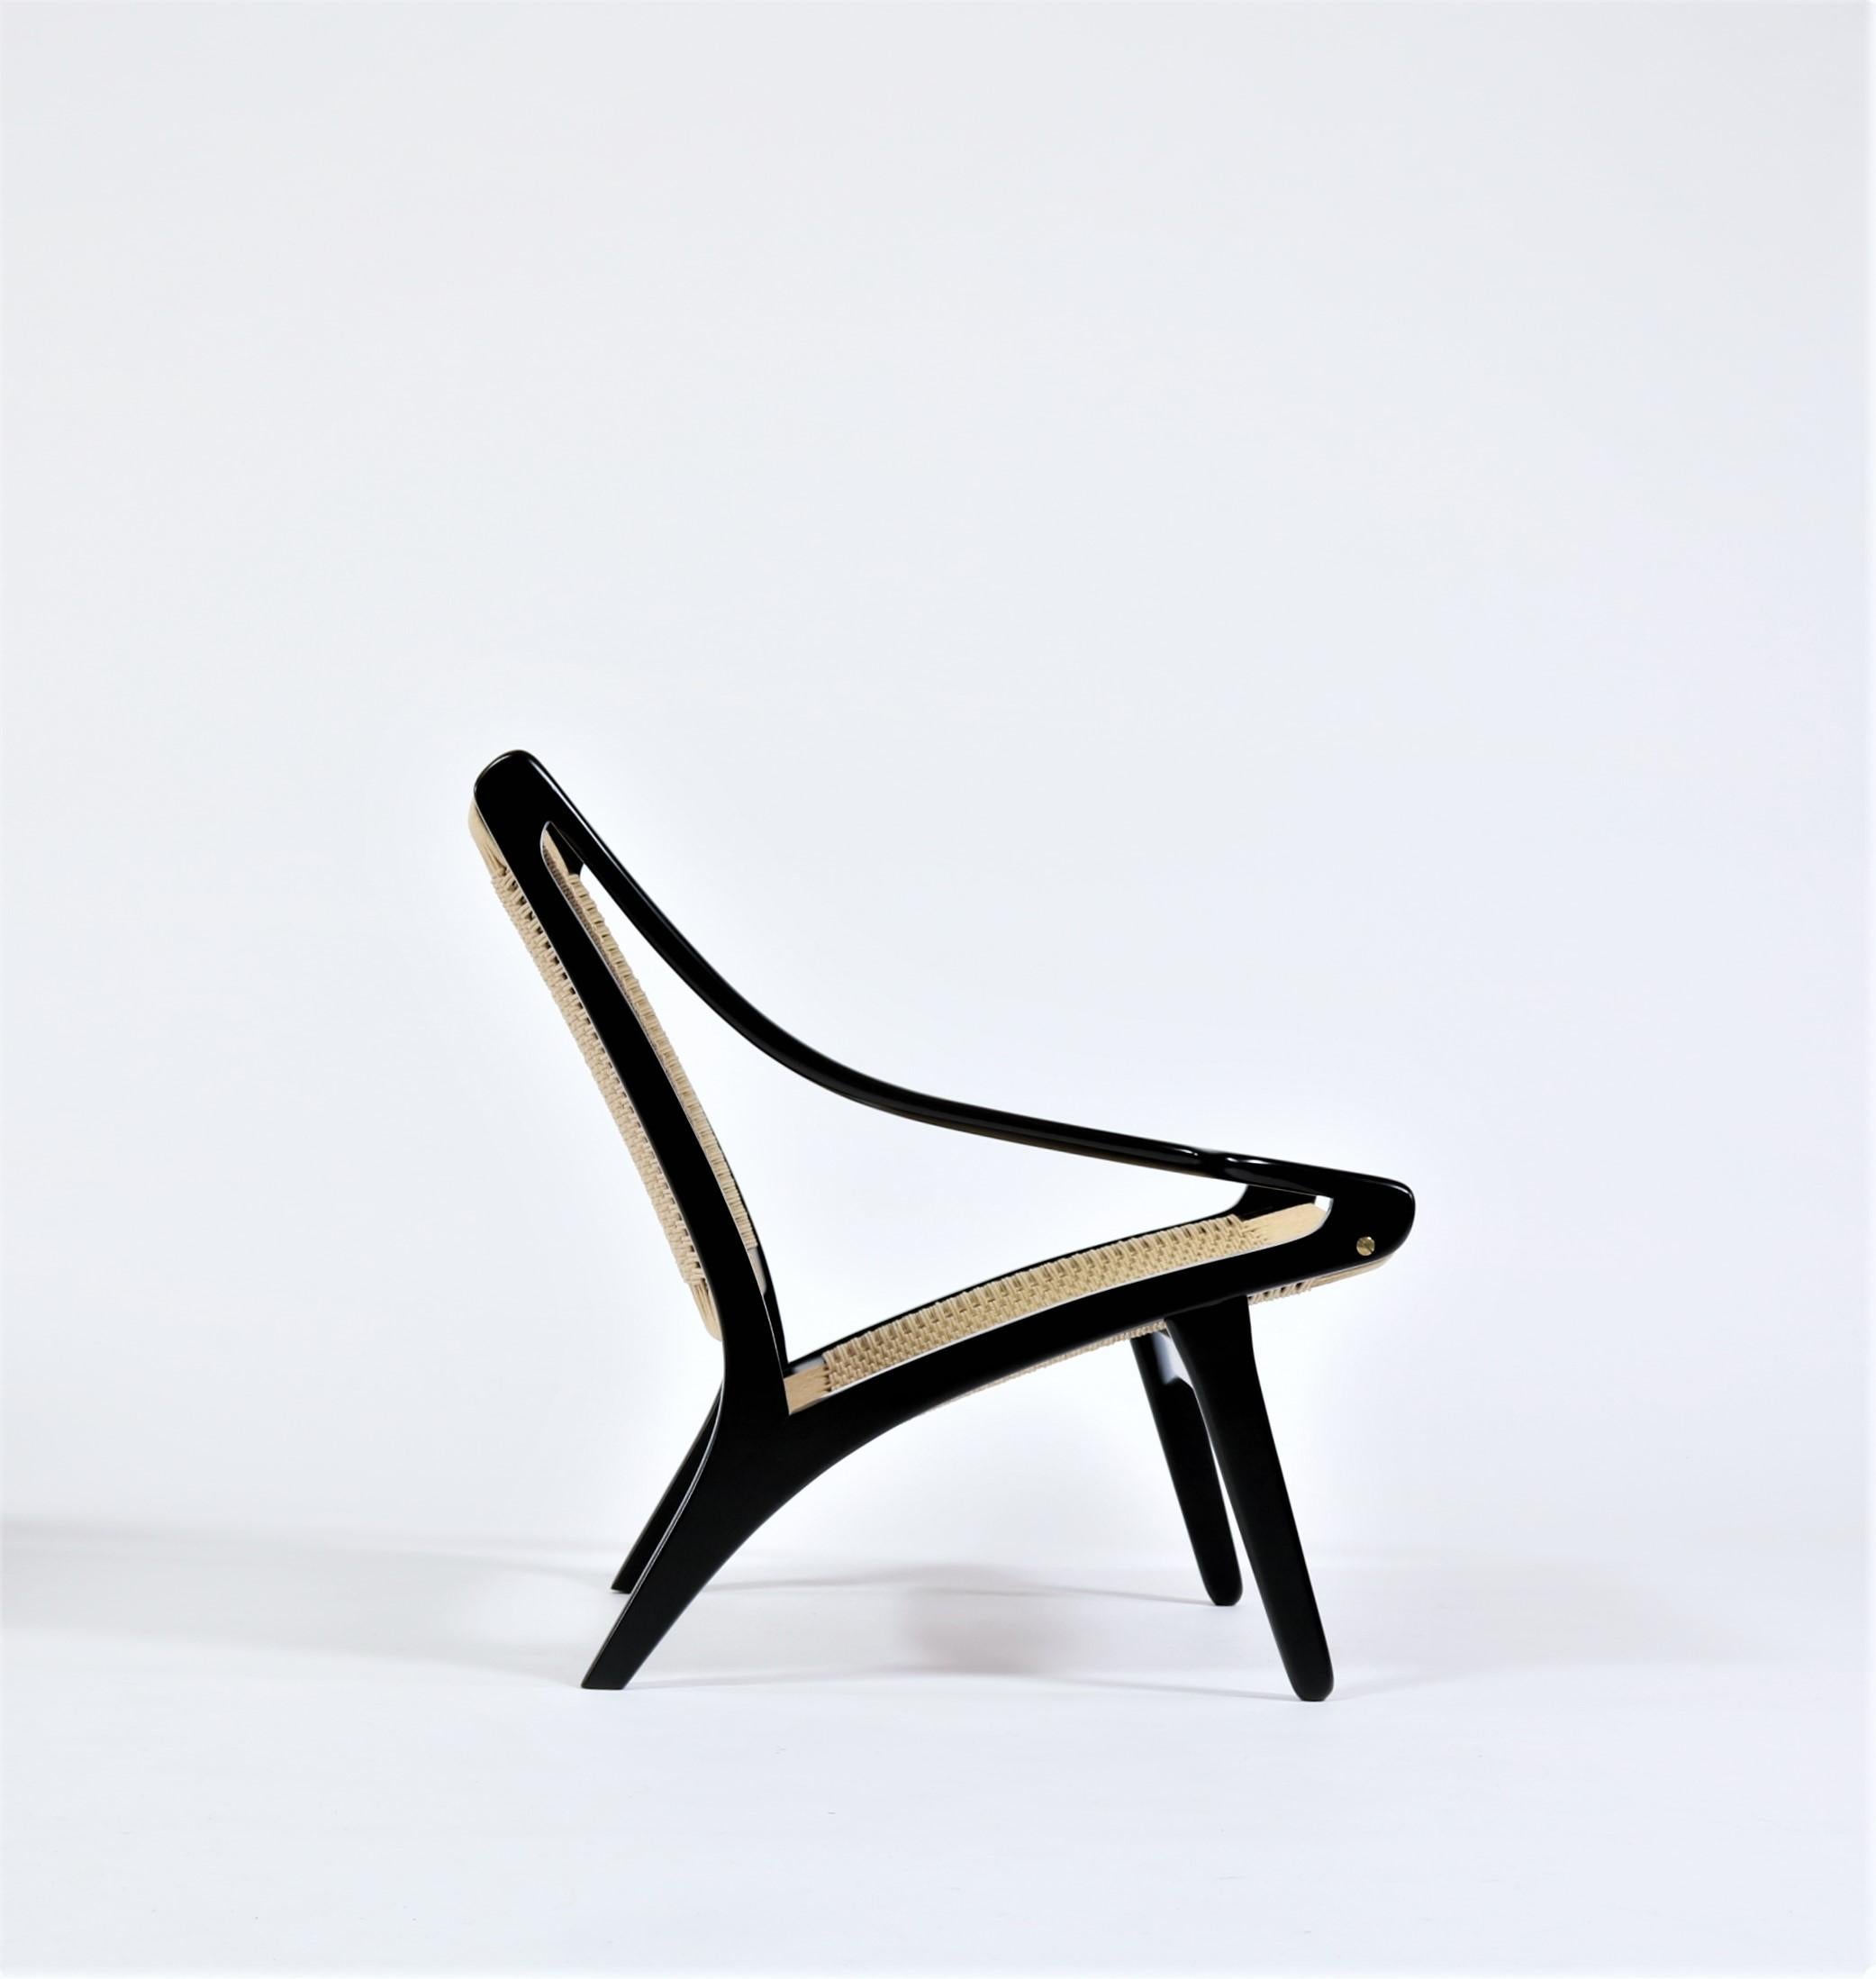 Rare et importante chaise longue des années 1950 en hêtre laqué et corde de papier du designer danois Illum Wikkelsø. Cette superbe chaise a été fabriquée chez l'ébéniste N. Eilersen au début des années 1950 pour une très courte période. Ce